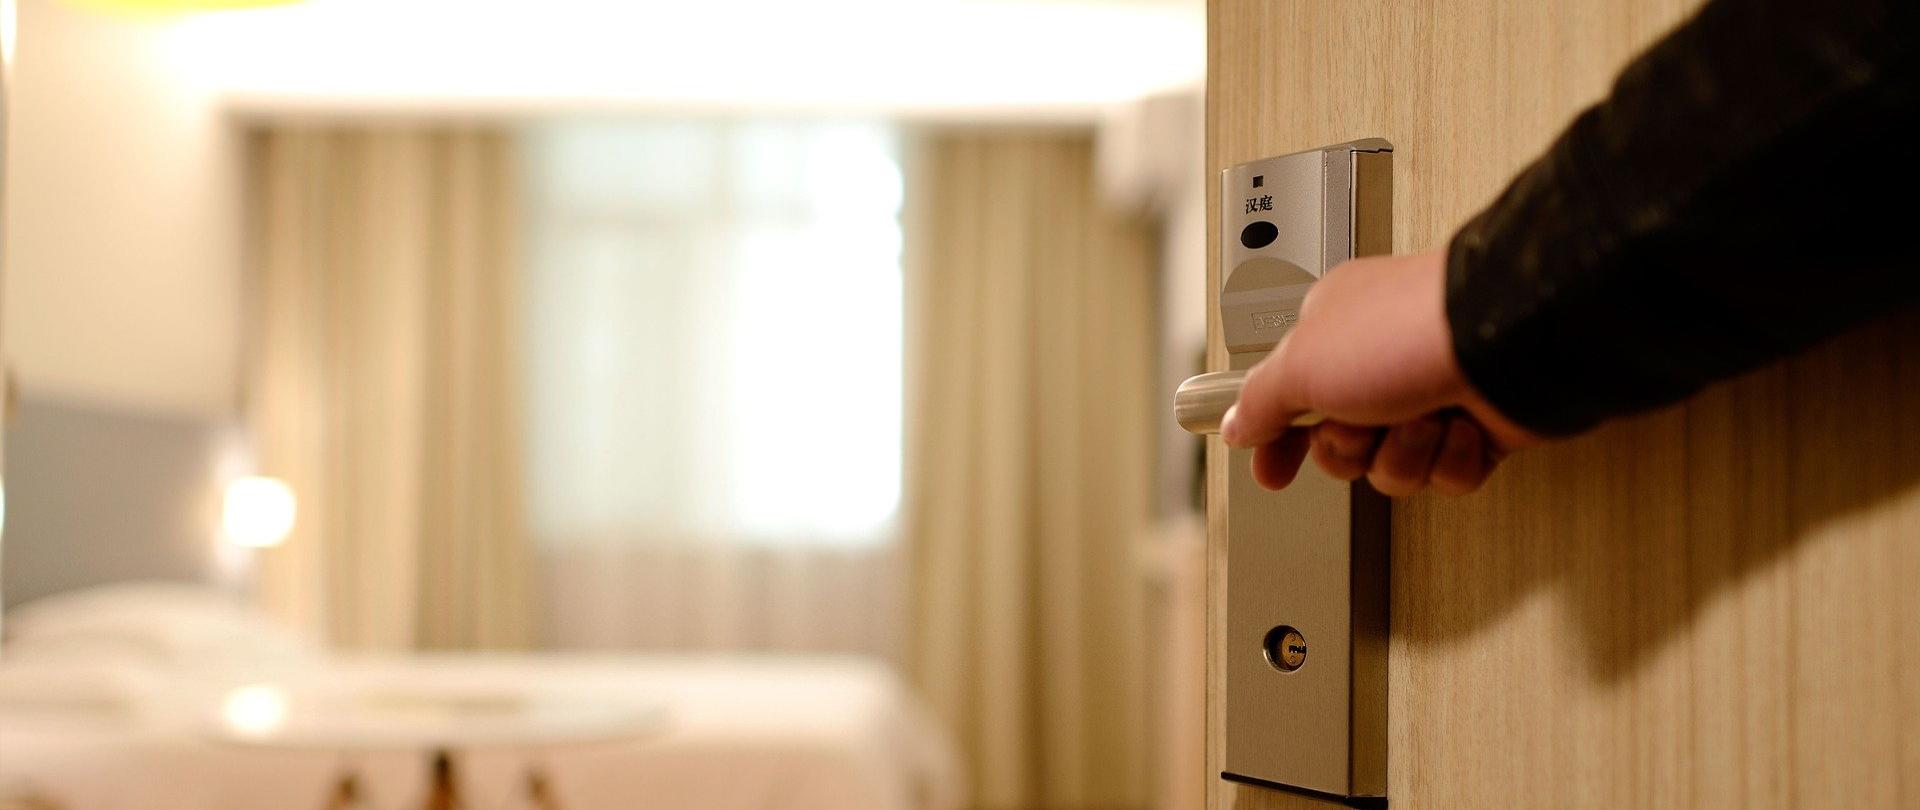 ręka na klamce drzwi otwierających pokój hotelowy